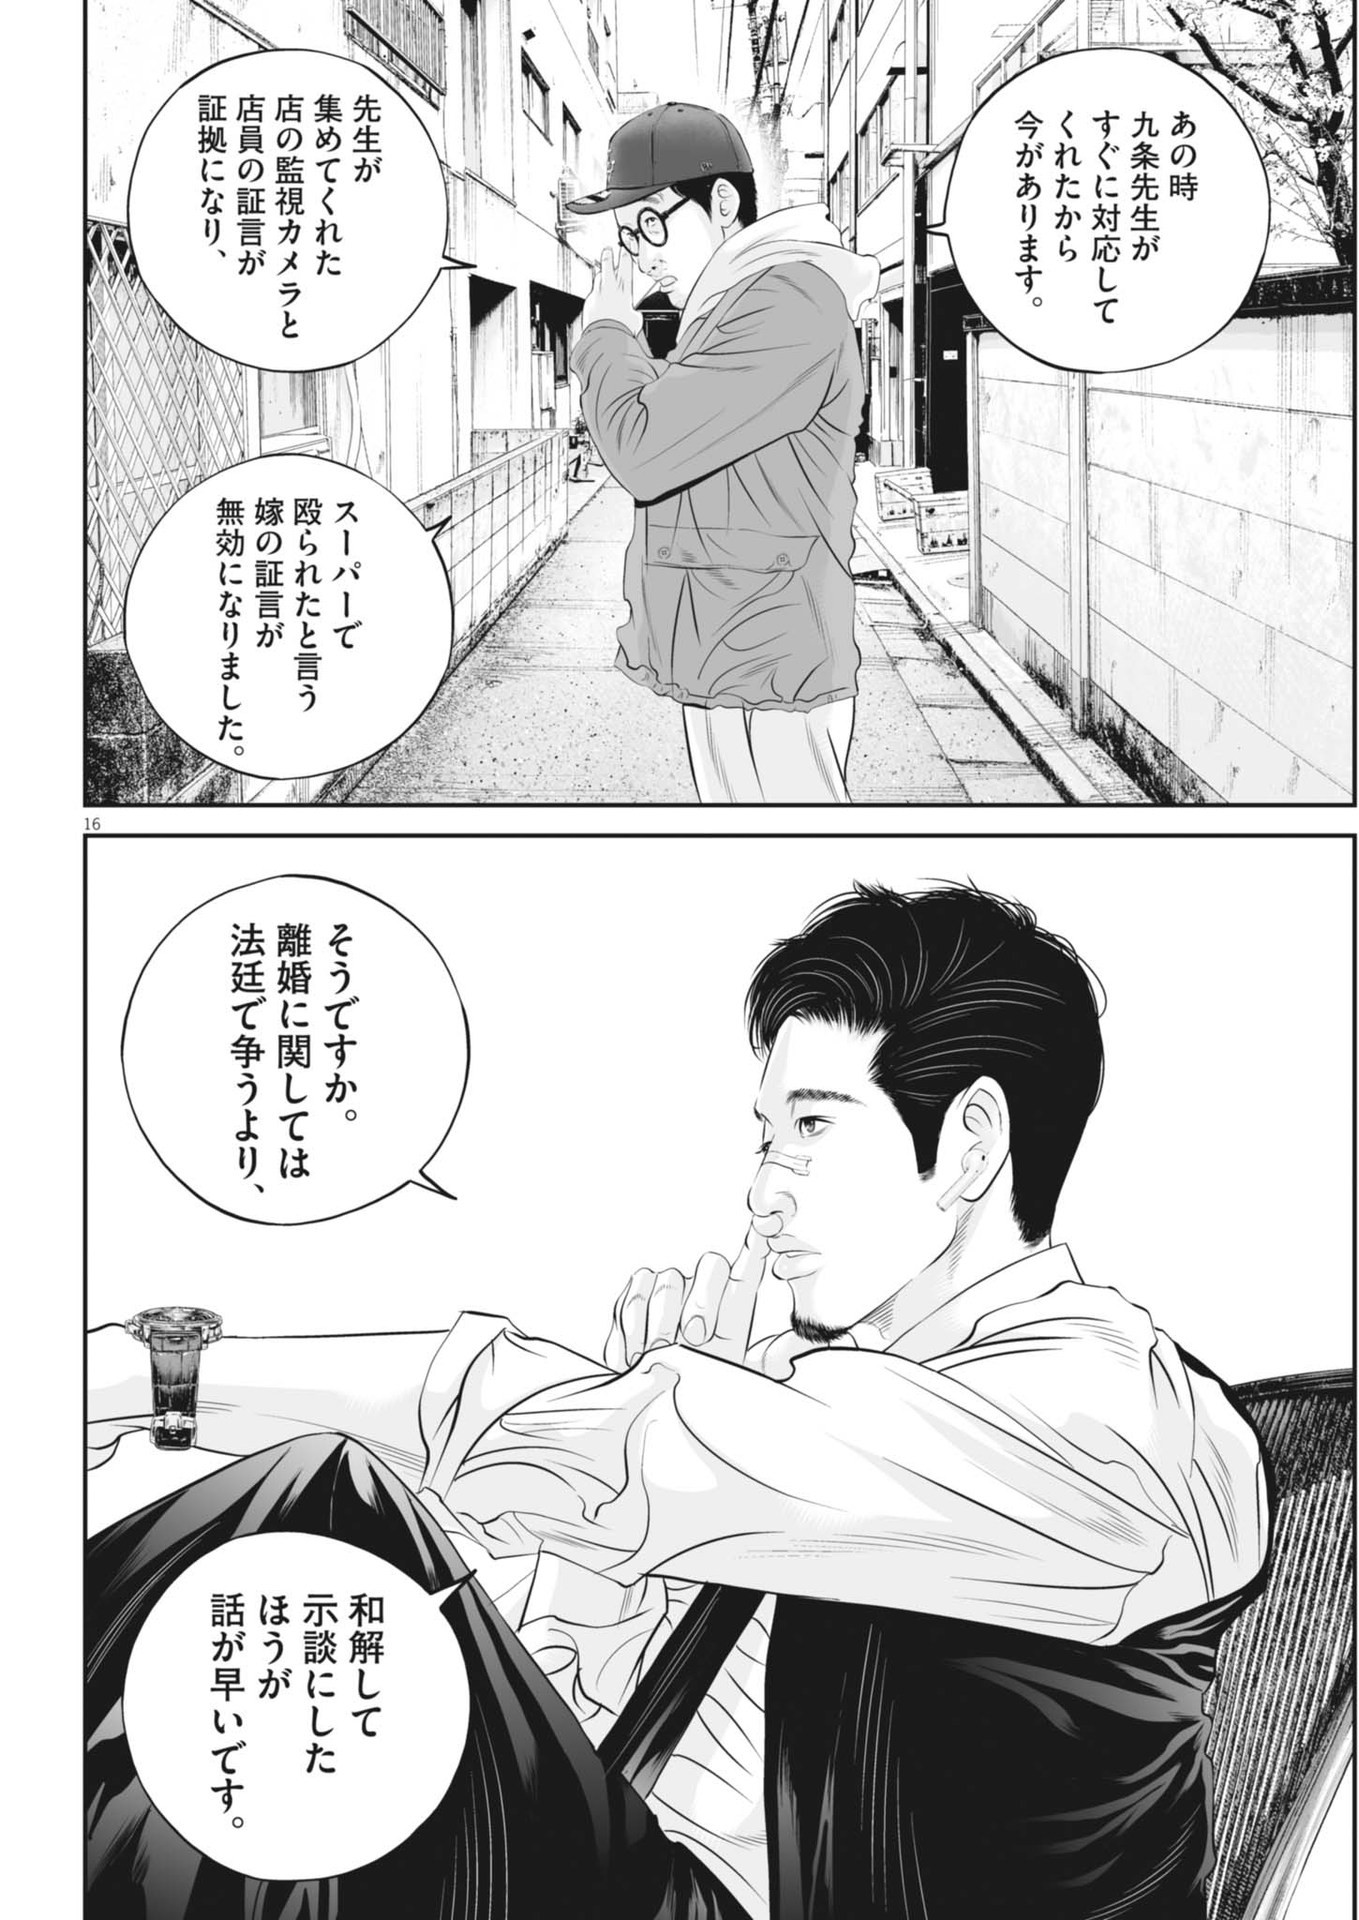 Kujou no Taizai - Chapter 98 - Page 16